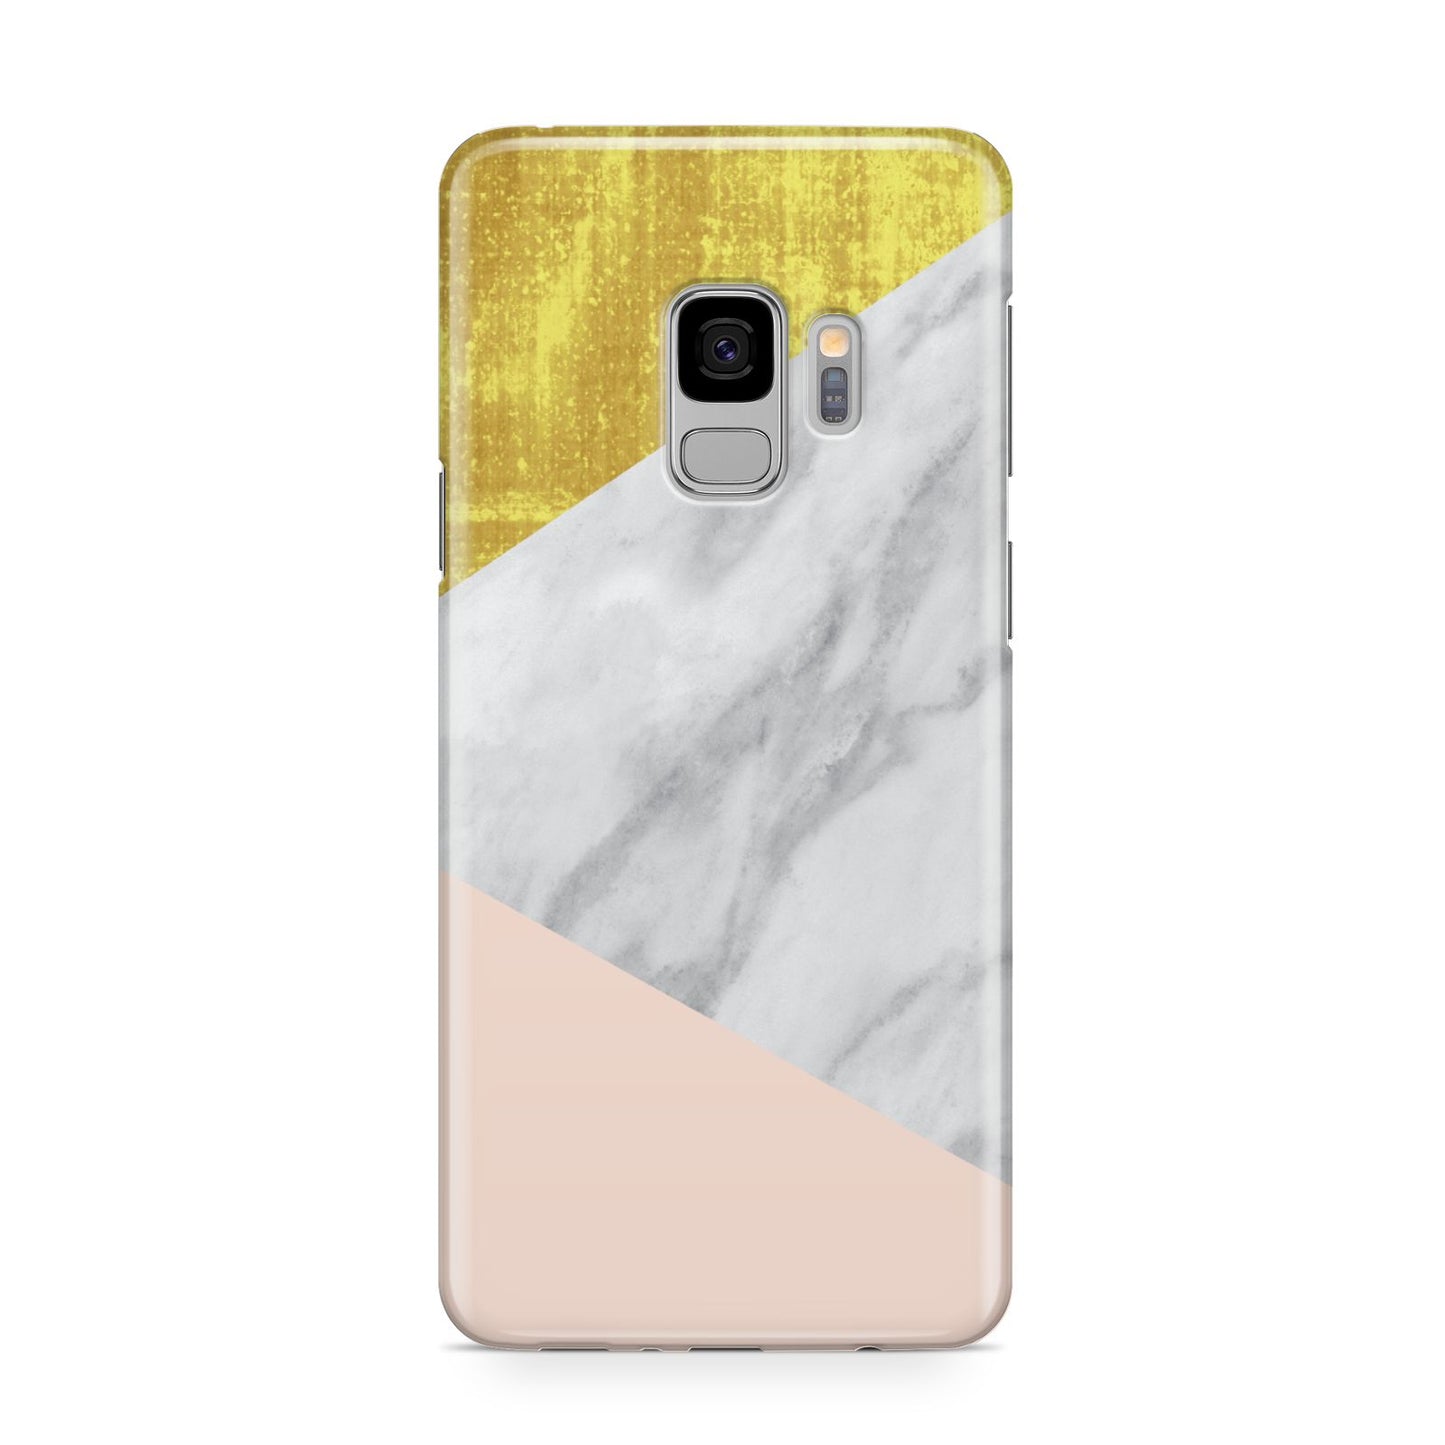 Marble White Gold Foil Peach Samsung Galaxy S9 Case